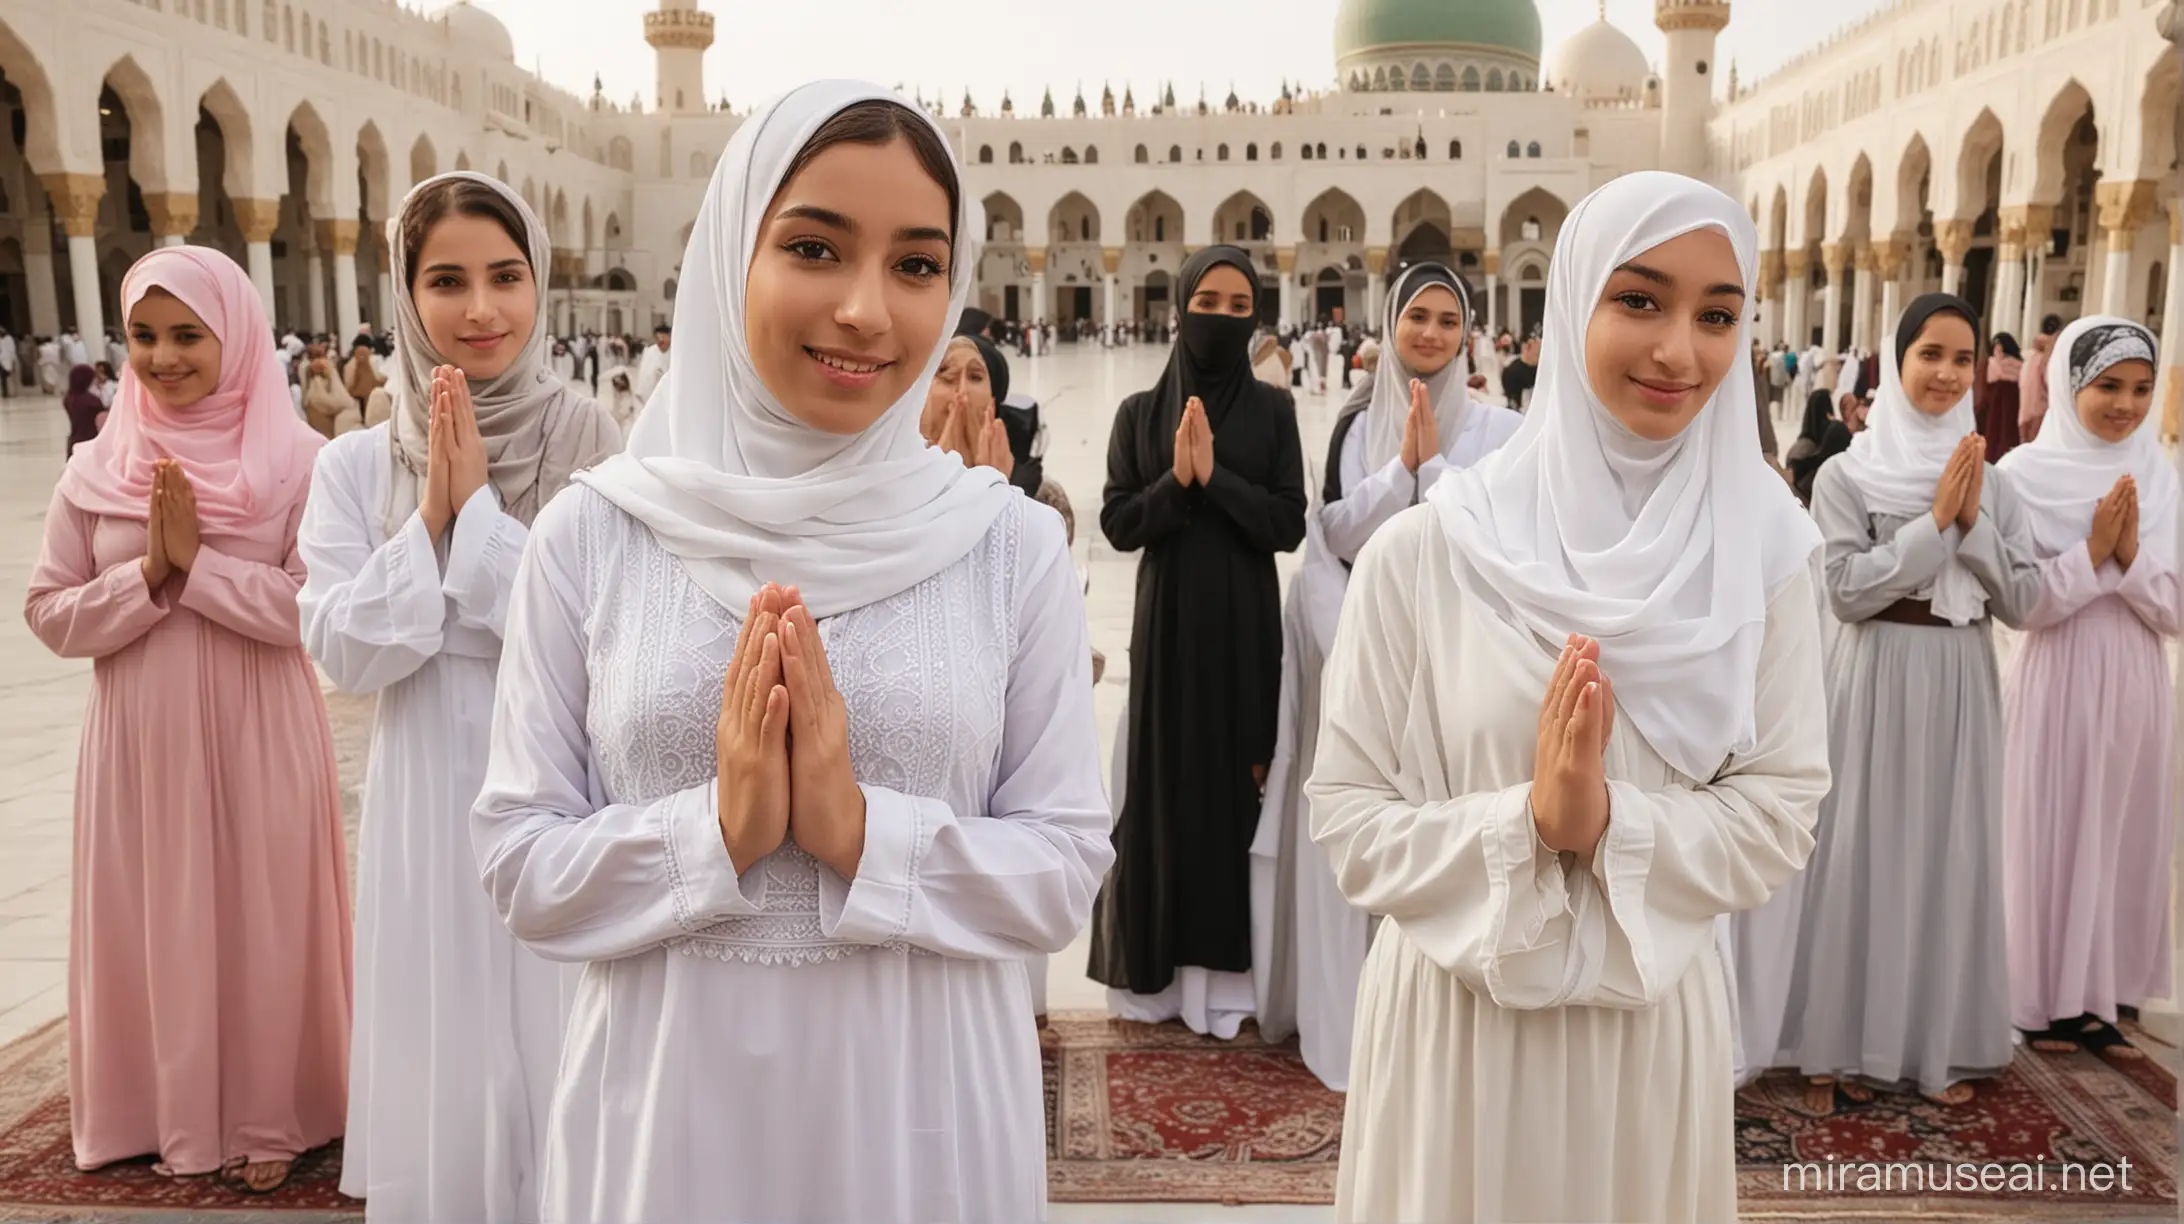 Muslim Women and Man in Prayer Pose at Masjidil Haram Mecca